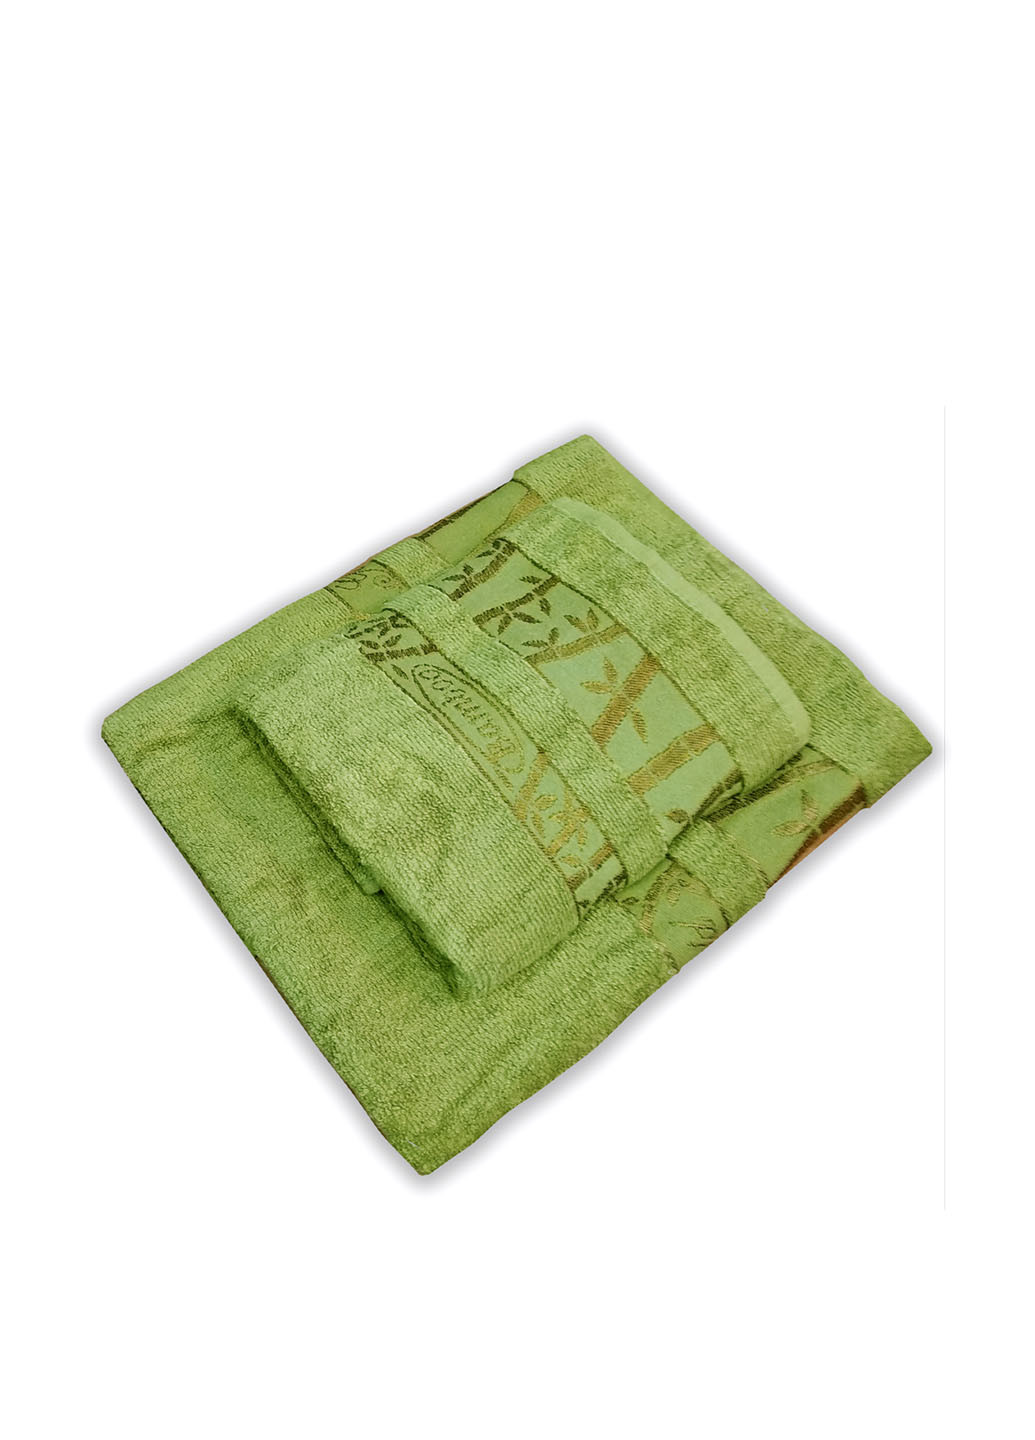 No Brand полотенце, 50х90 см рисунок оливково-зеленый производство - Турция